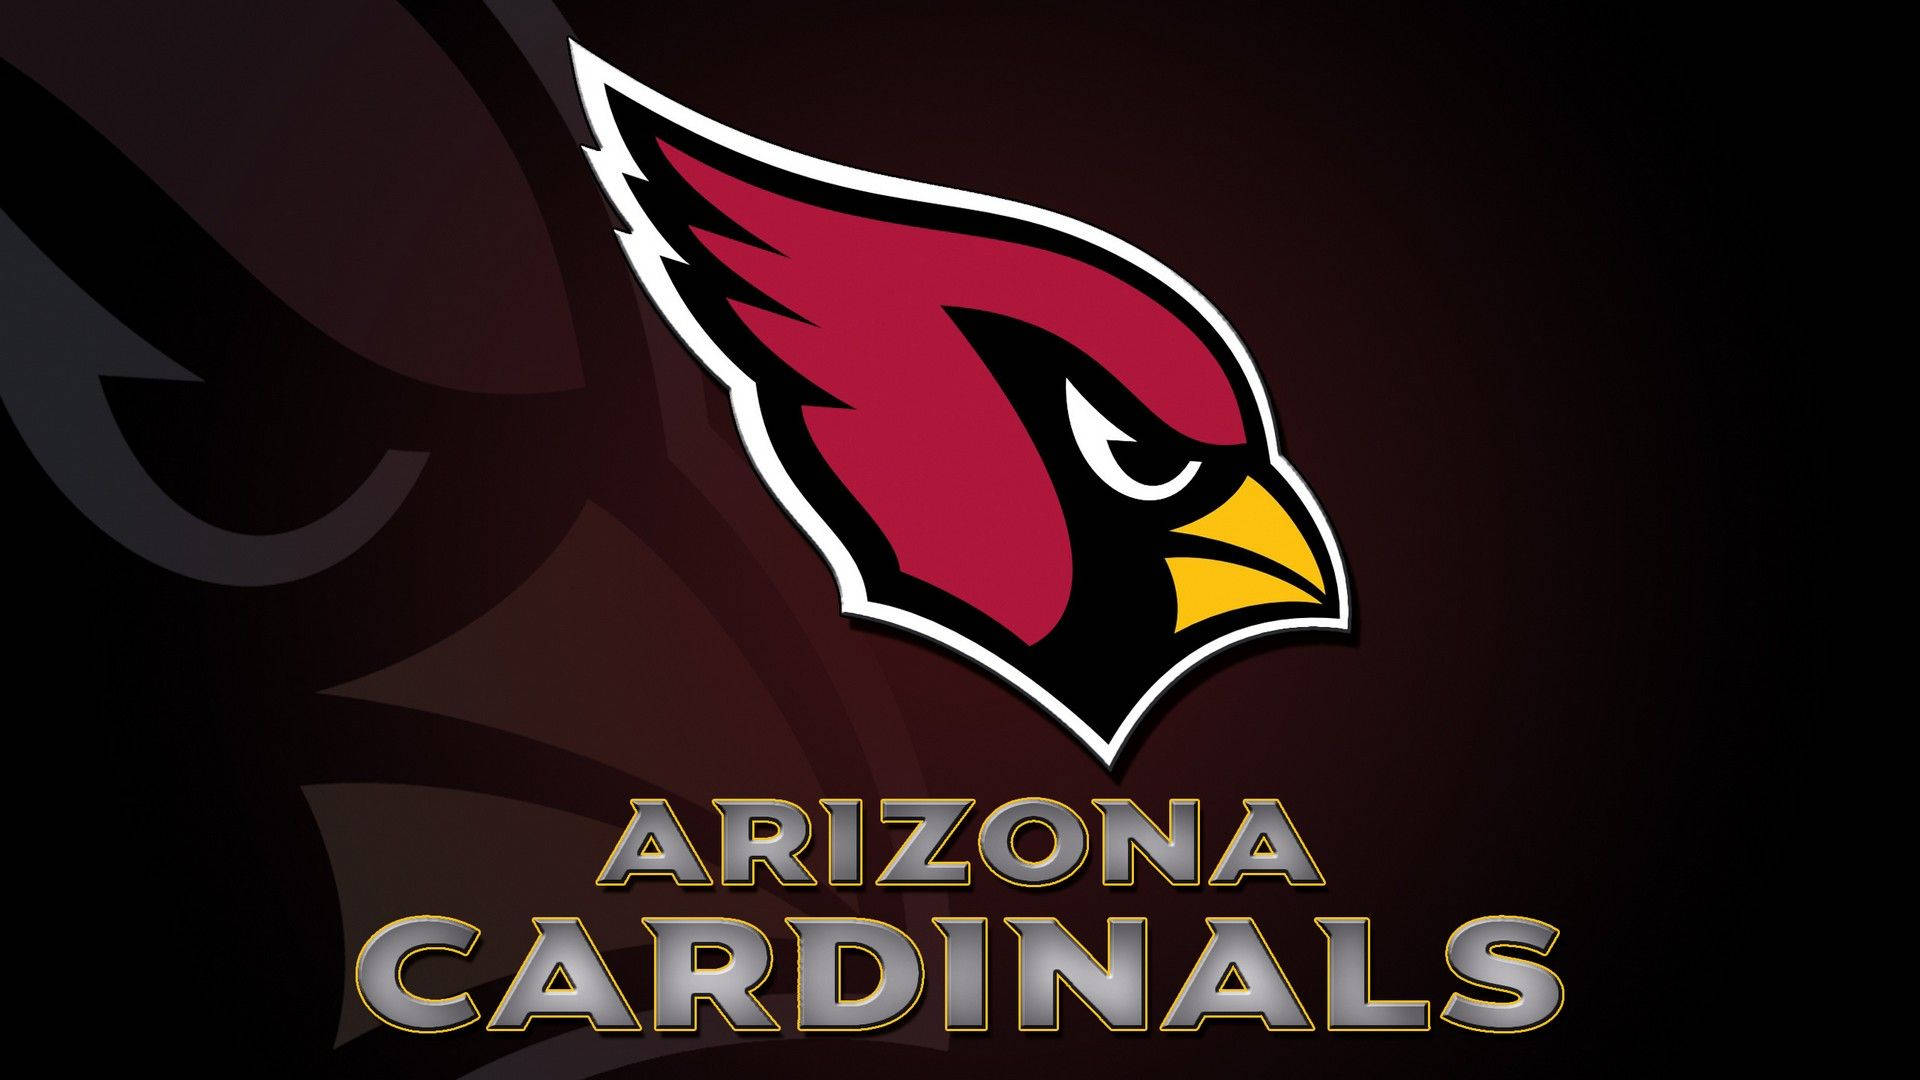 Arizona St Louis Cardinals Wallpaper